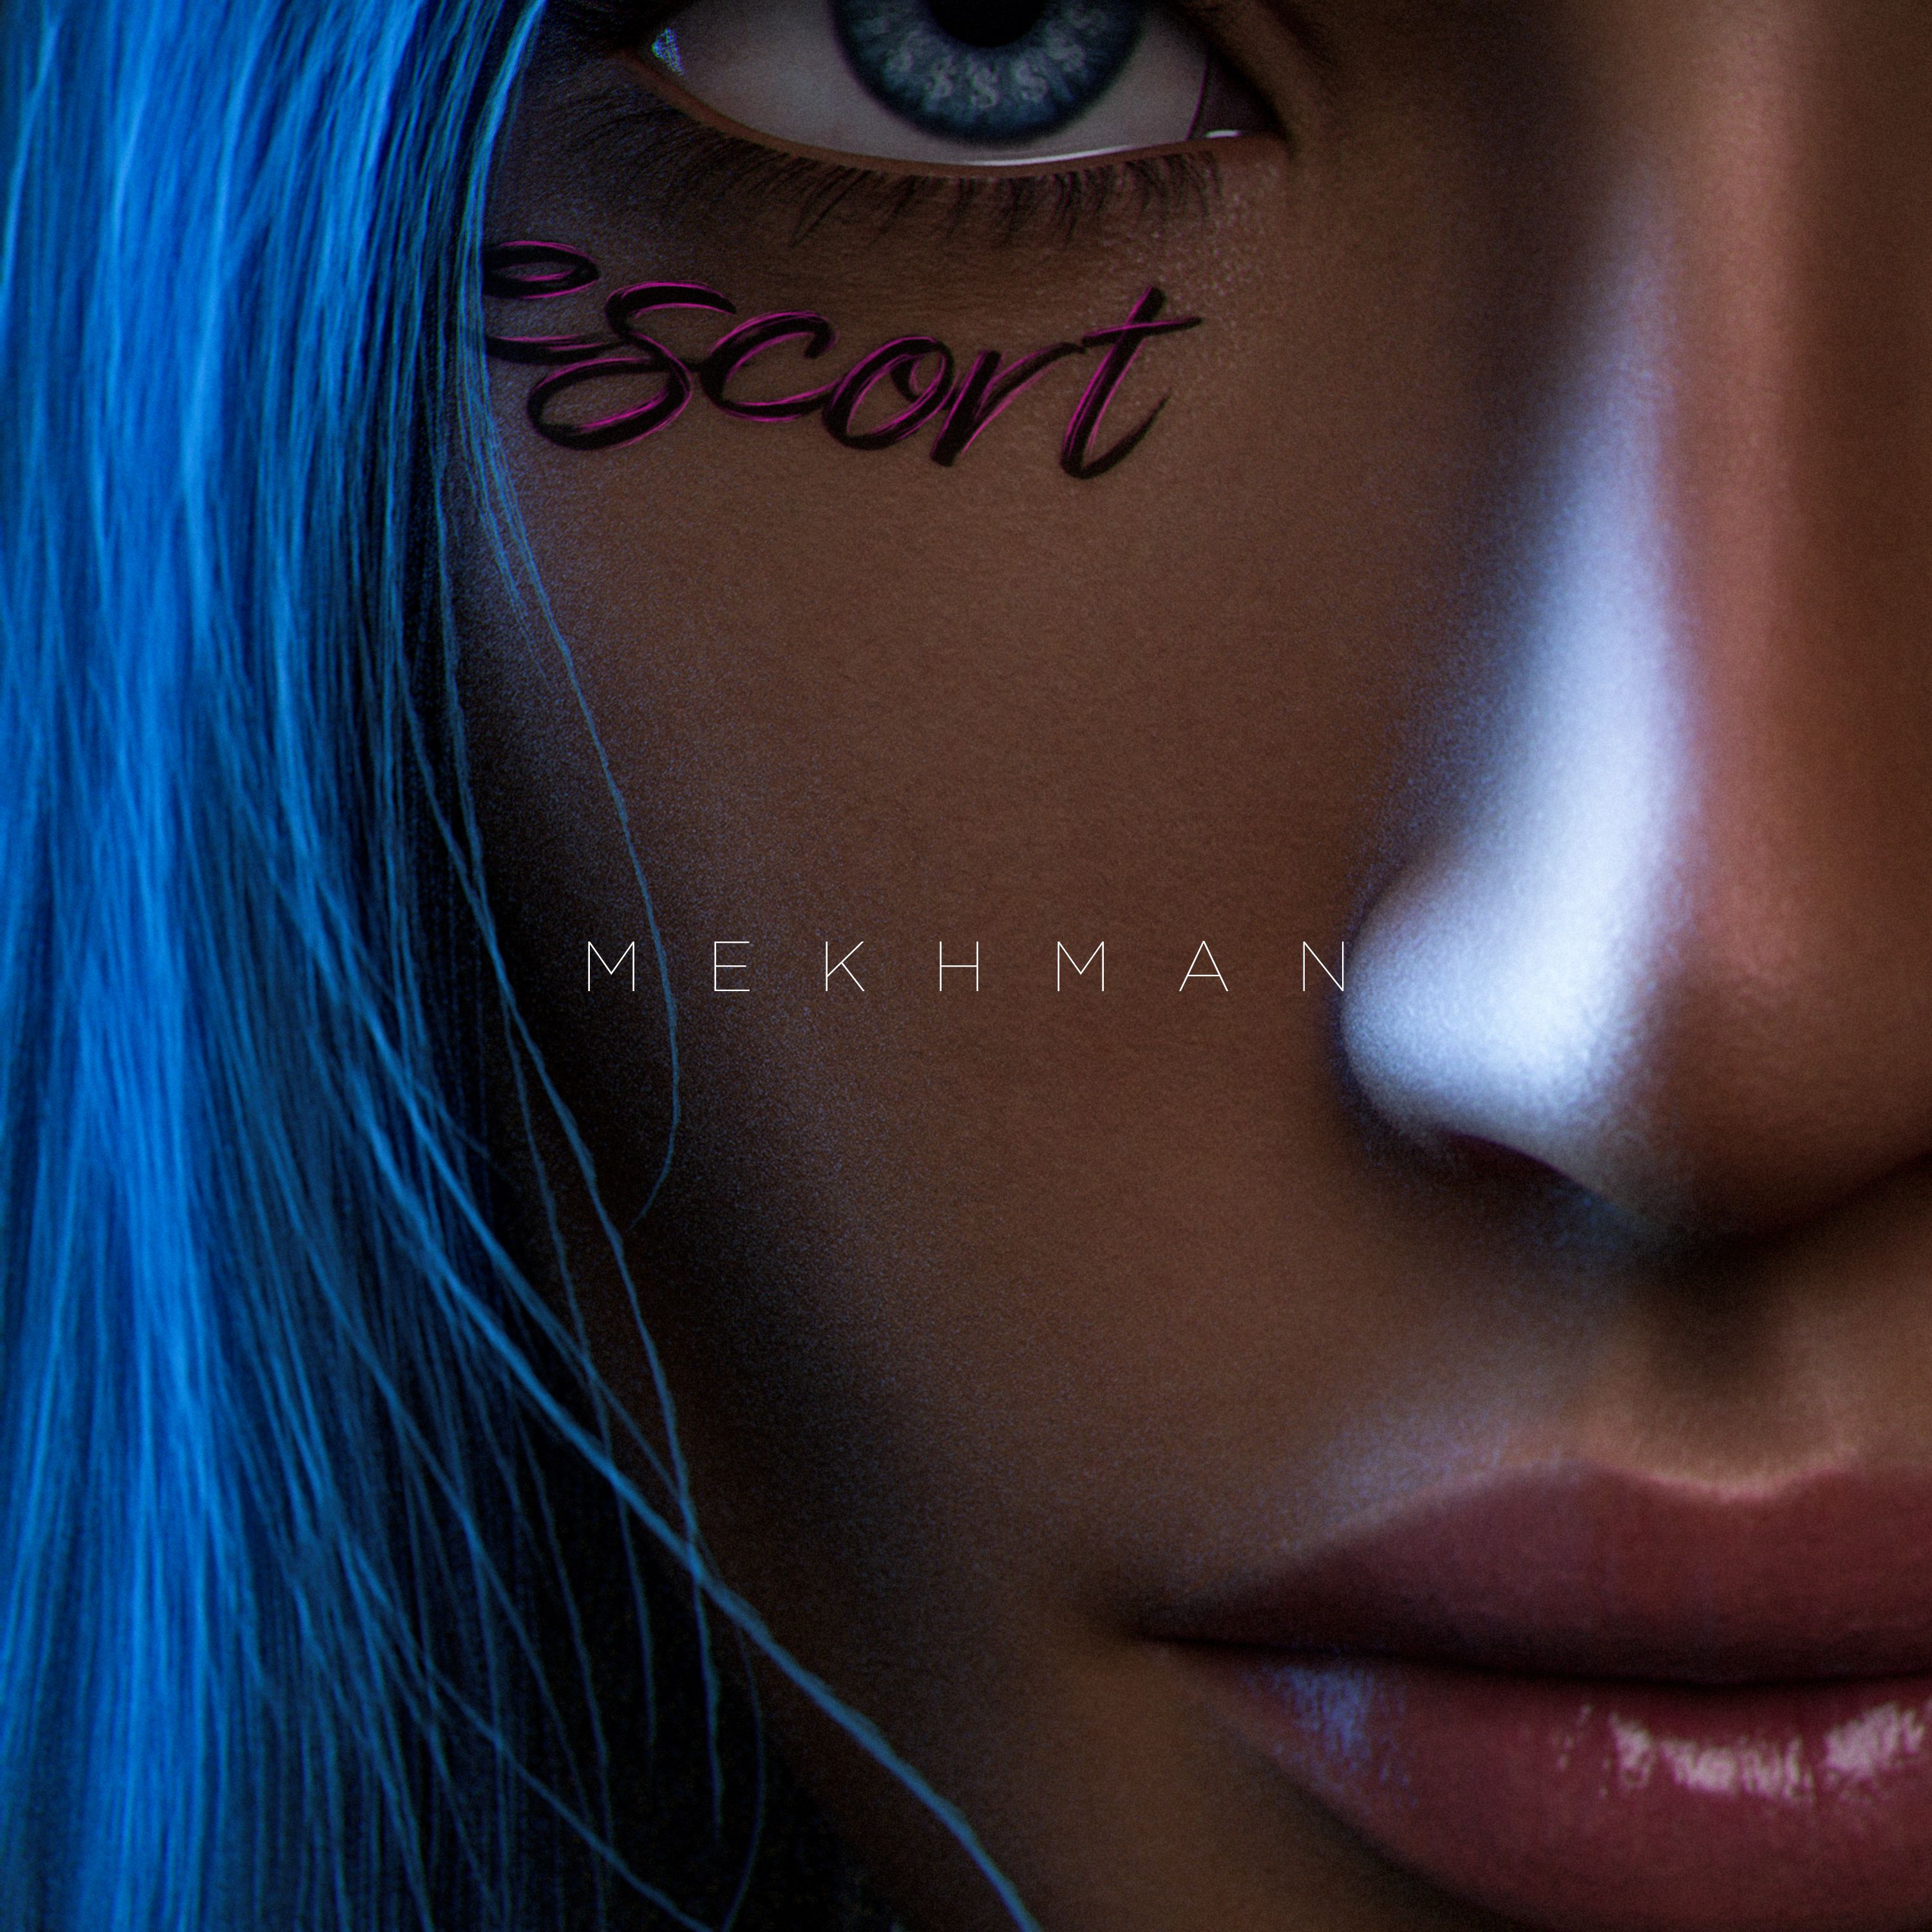 Download Mekhman - Escort